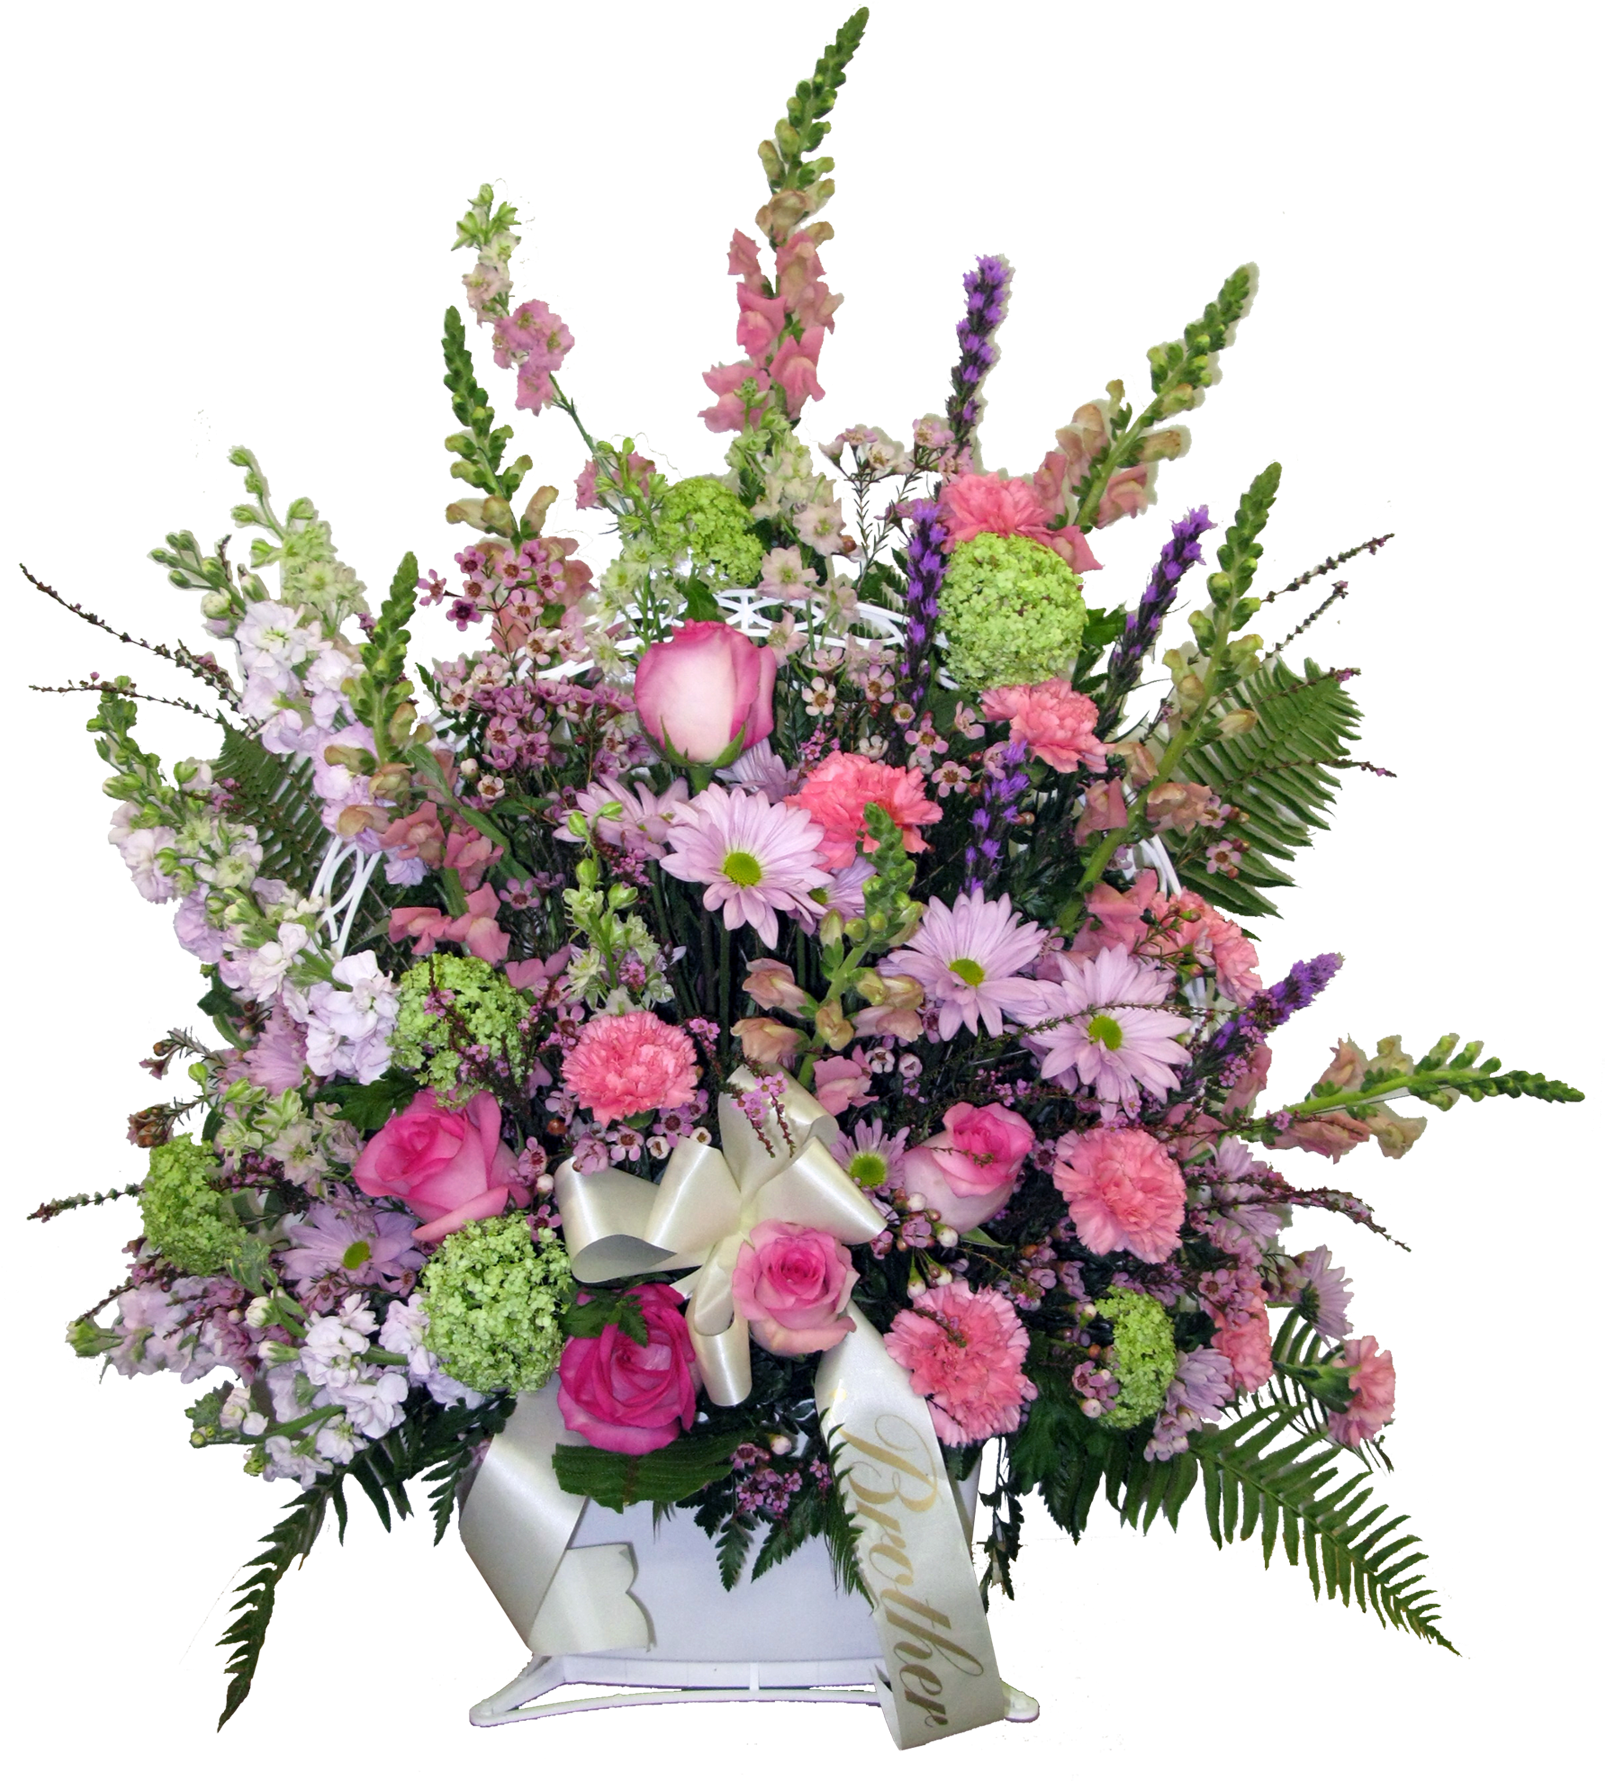 976 - Bouquet (1625x1800)